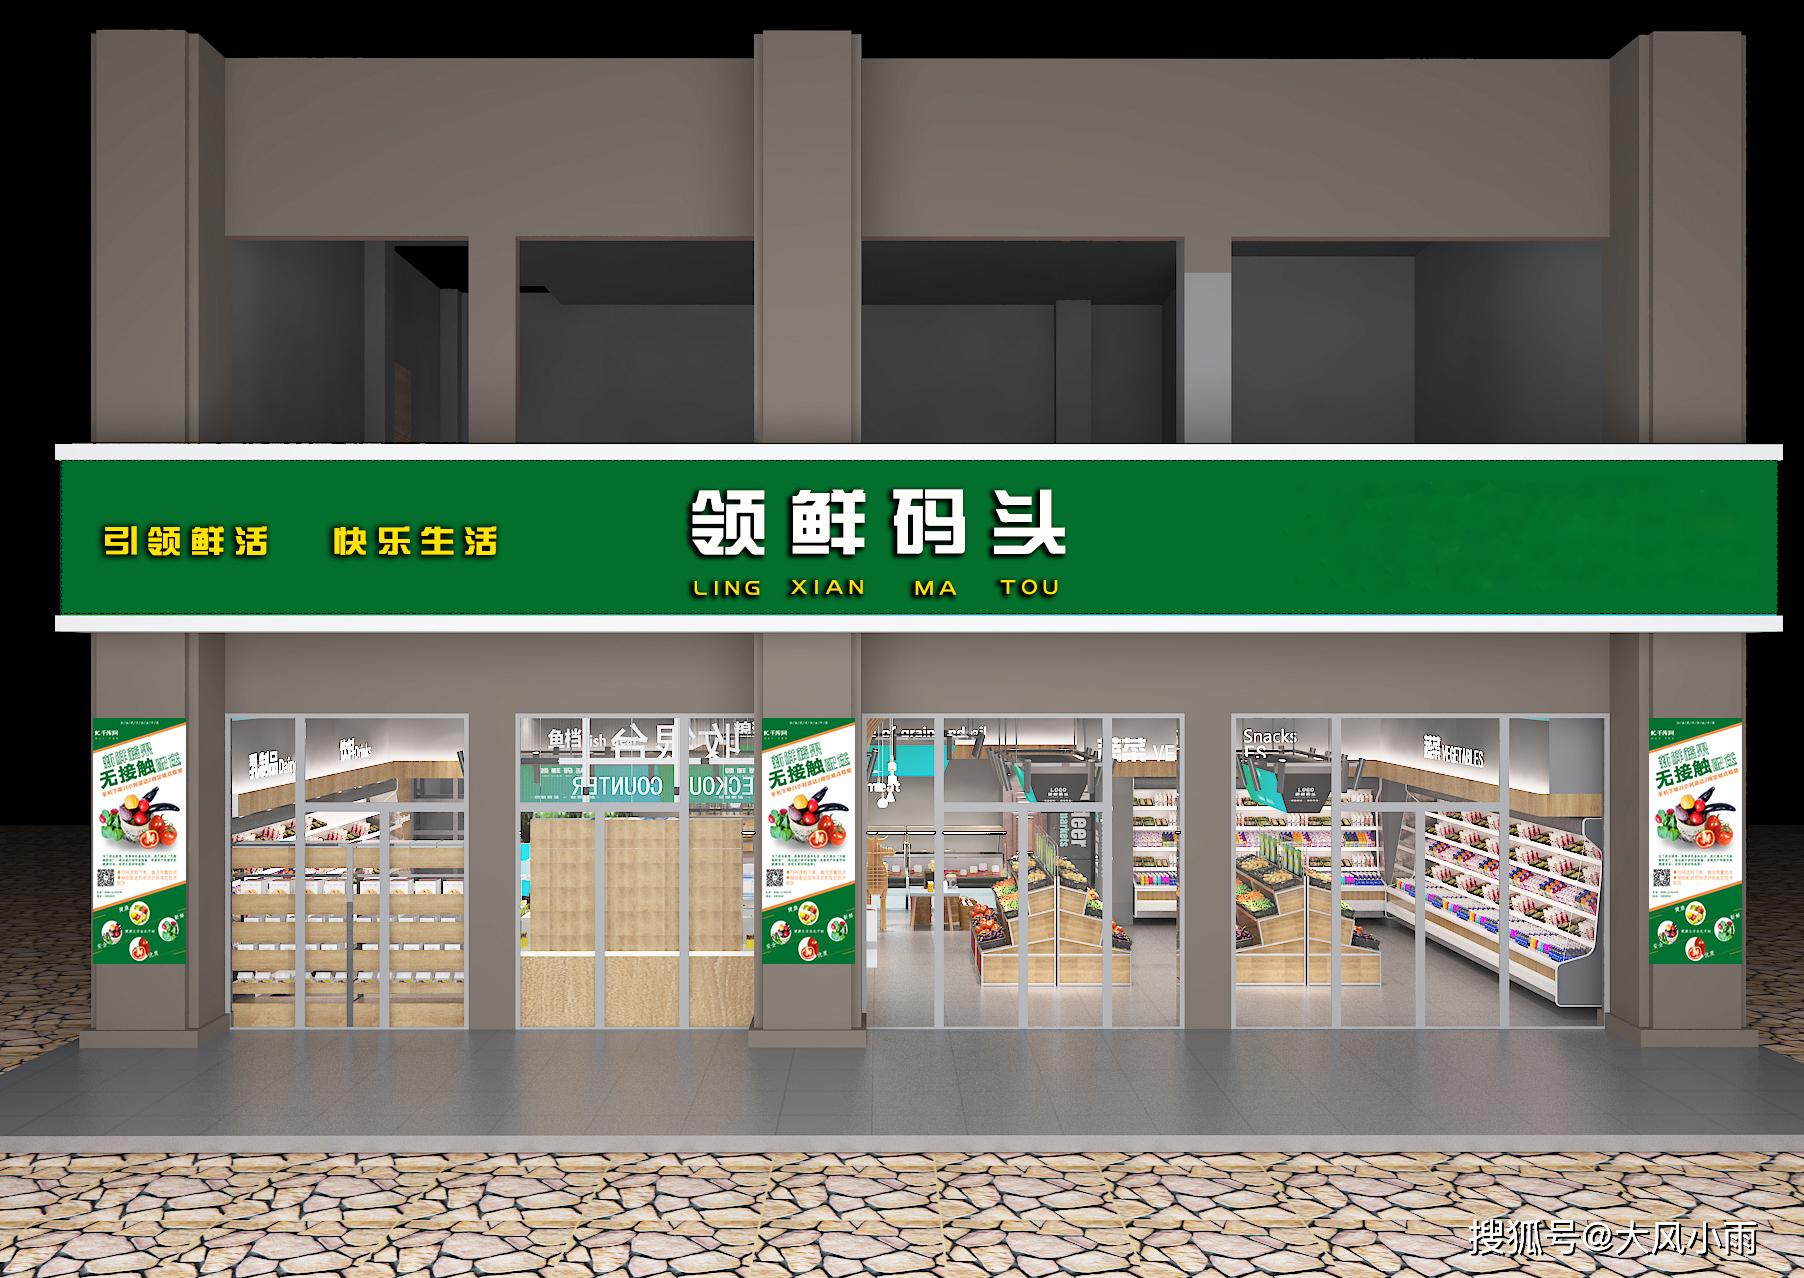 领鲜码头——您身边的生鲜一站式购物超市